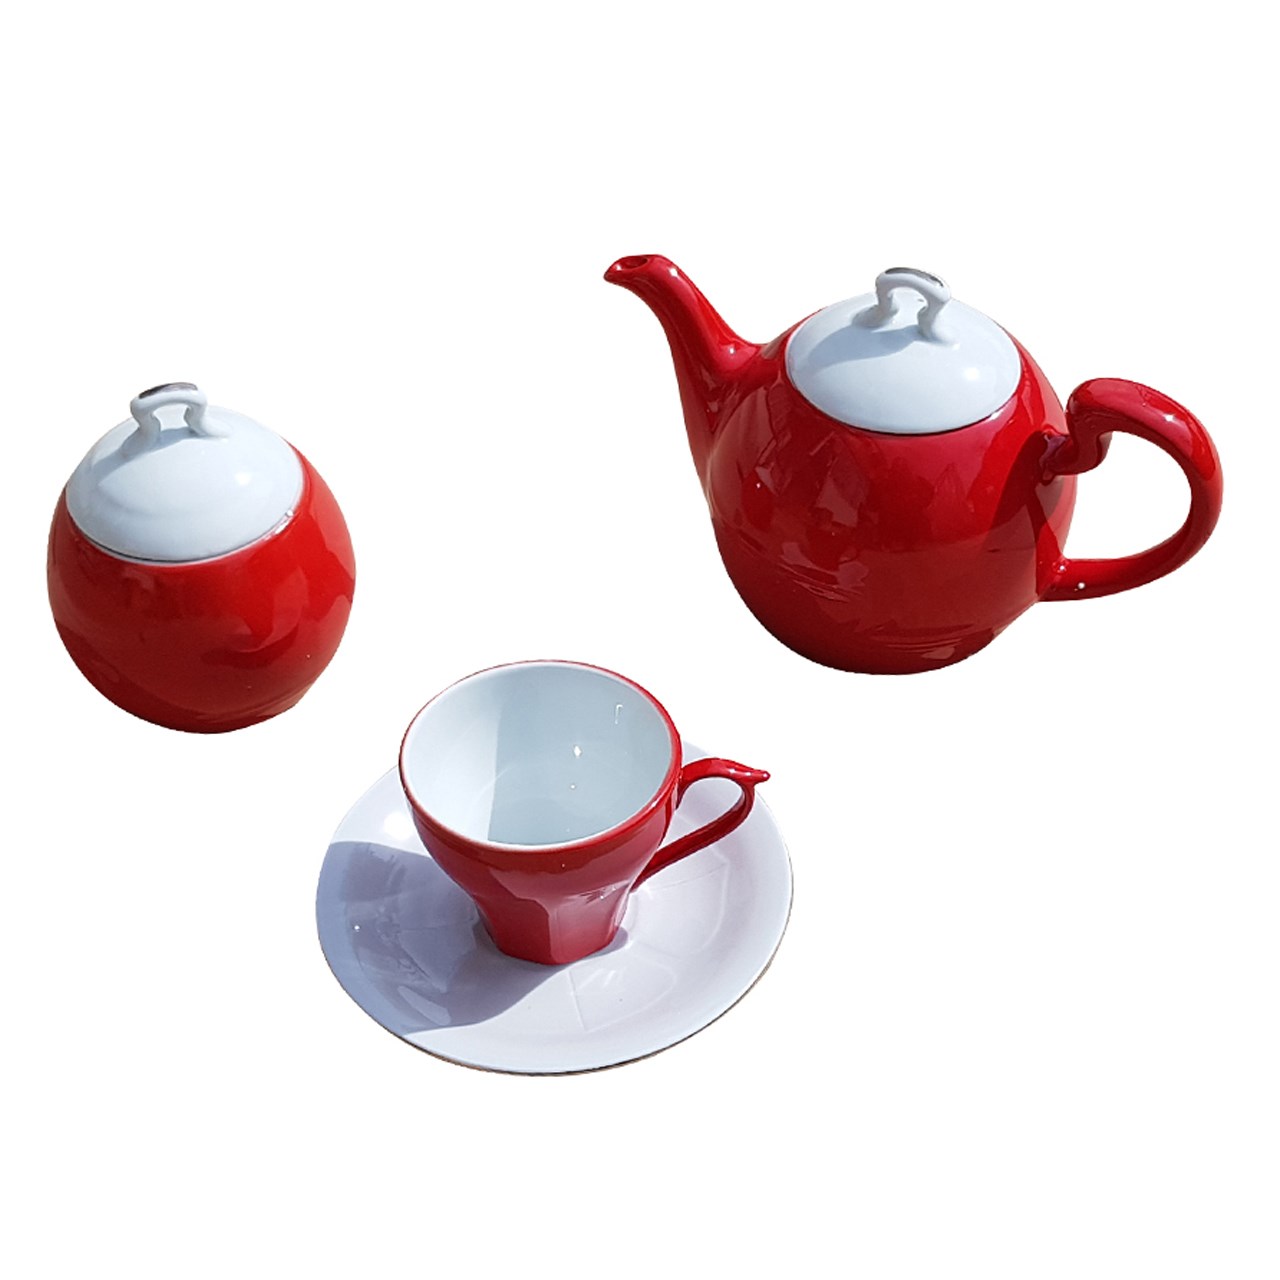 سرویس چای خوری 16 پارچه آفرینش های هنری